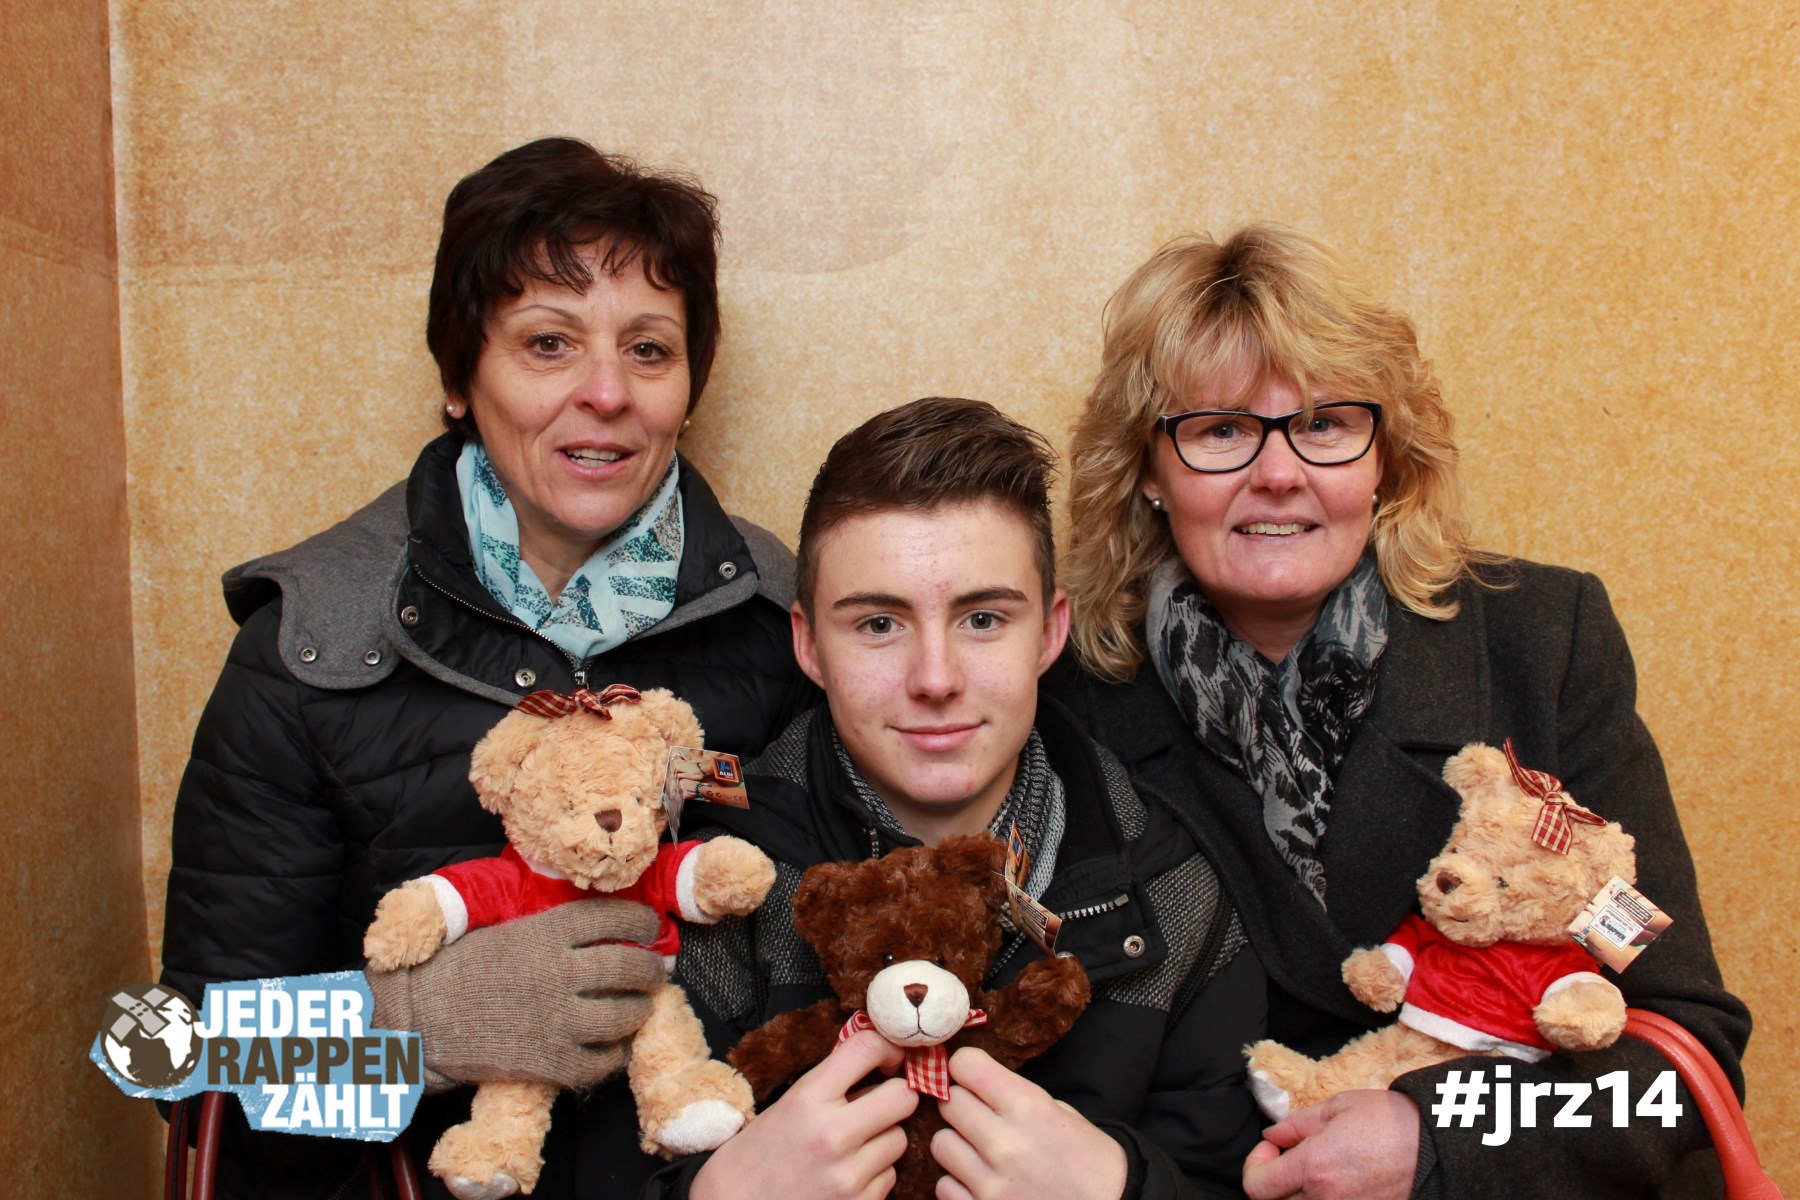 Spende auch du einen Teddybären für Familien auf der Flucht. #jrz14 Jeder Rappen zählt. Foto unter: